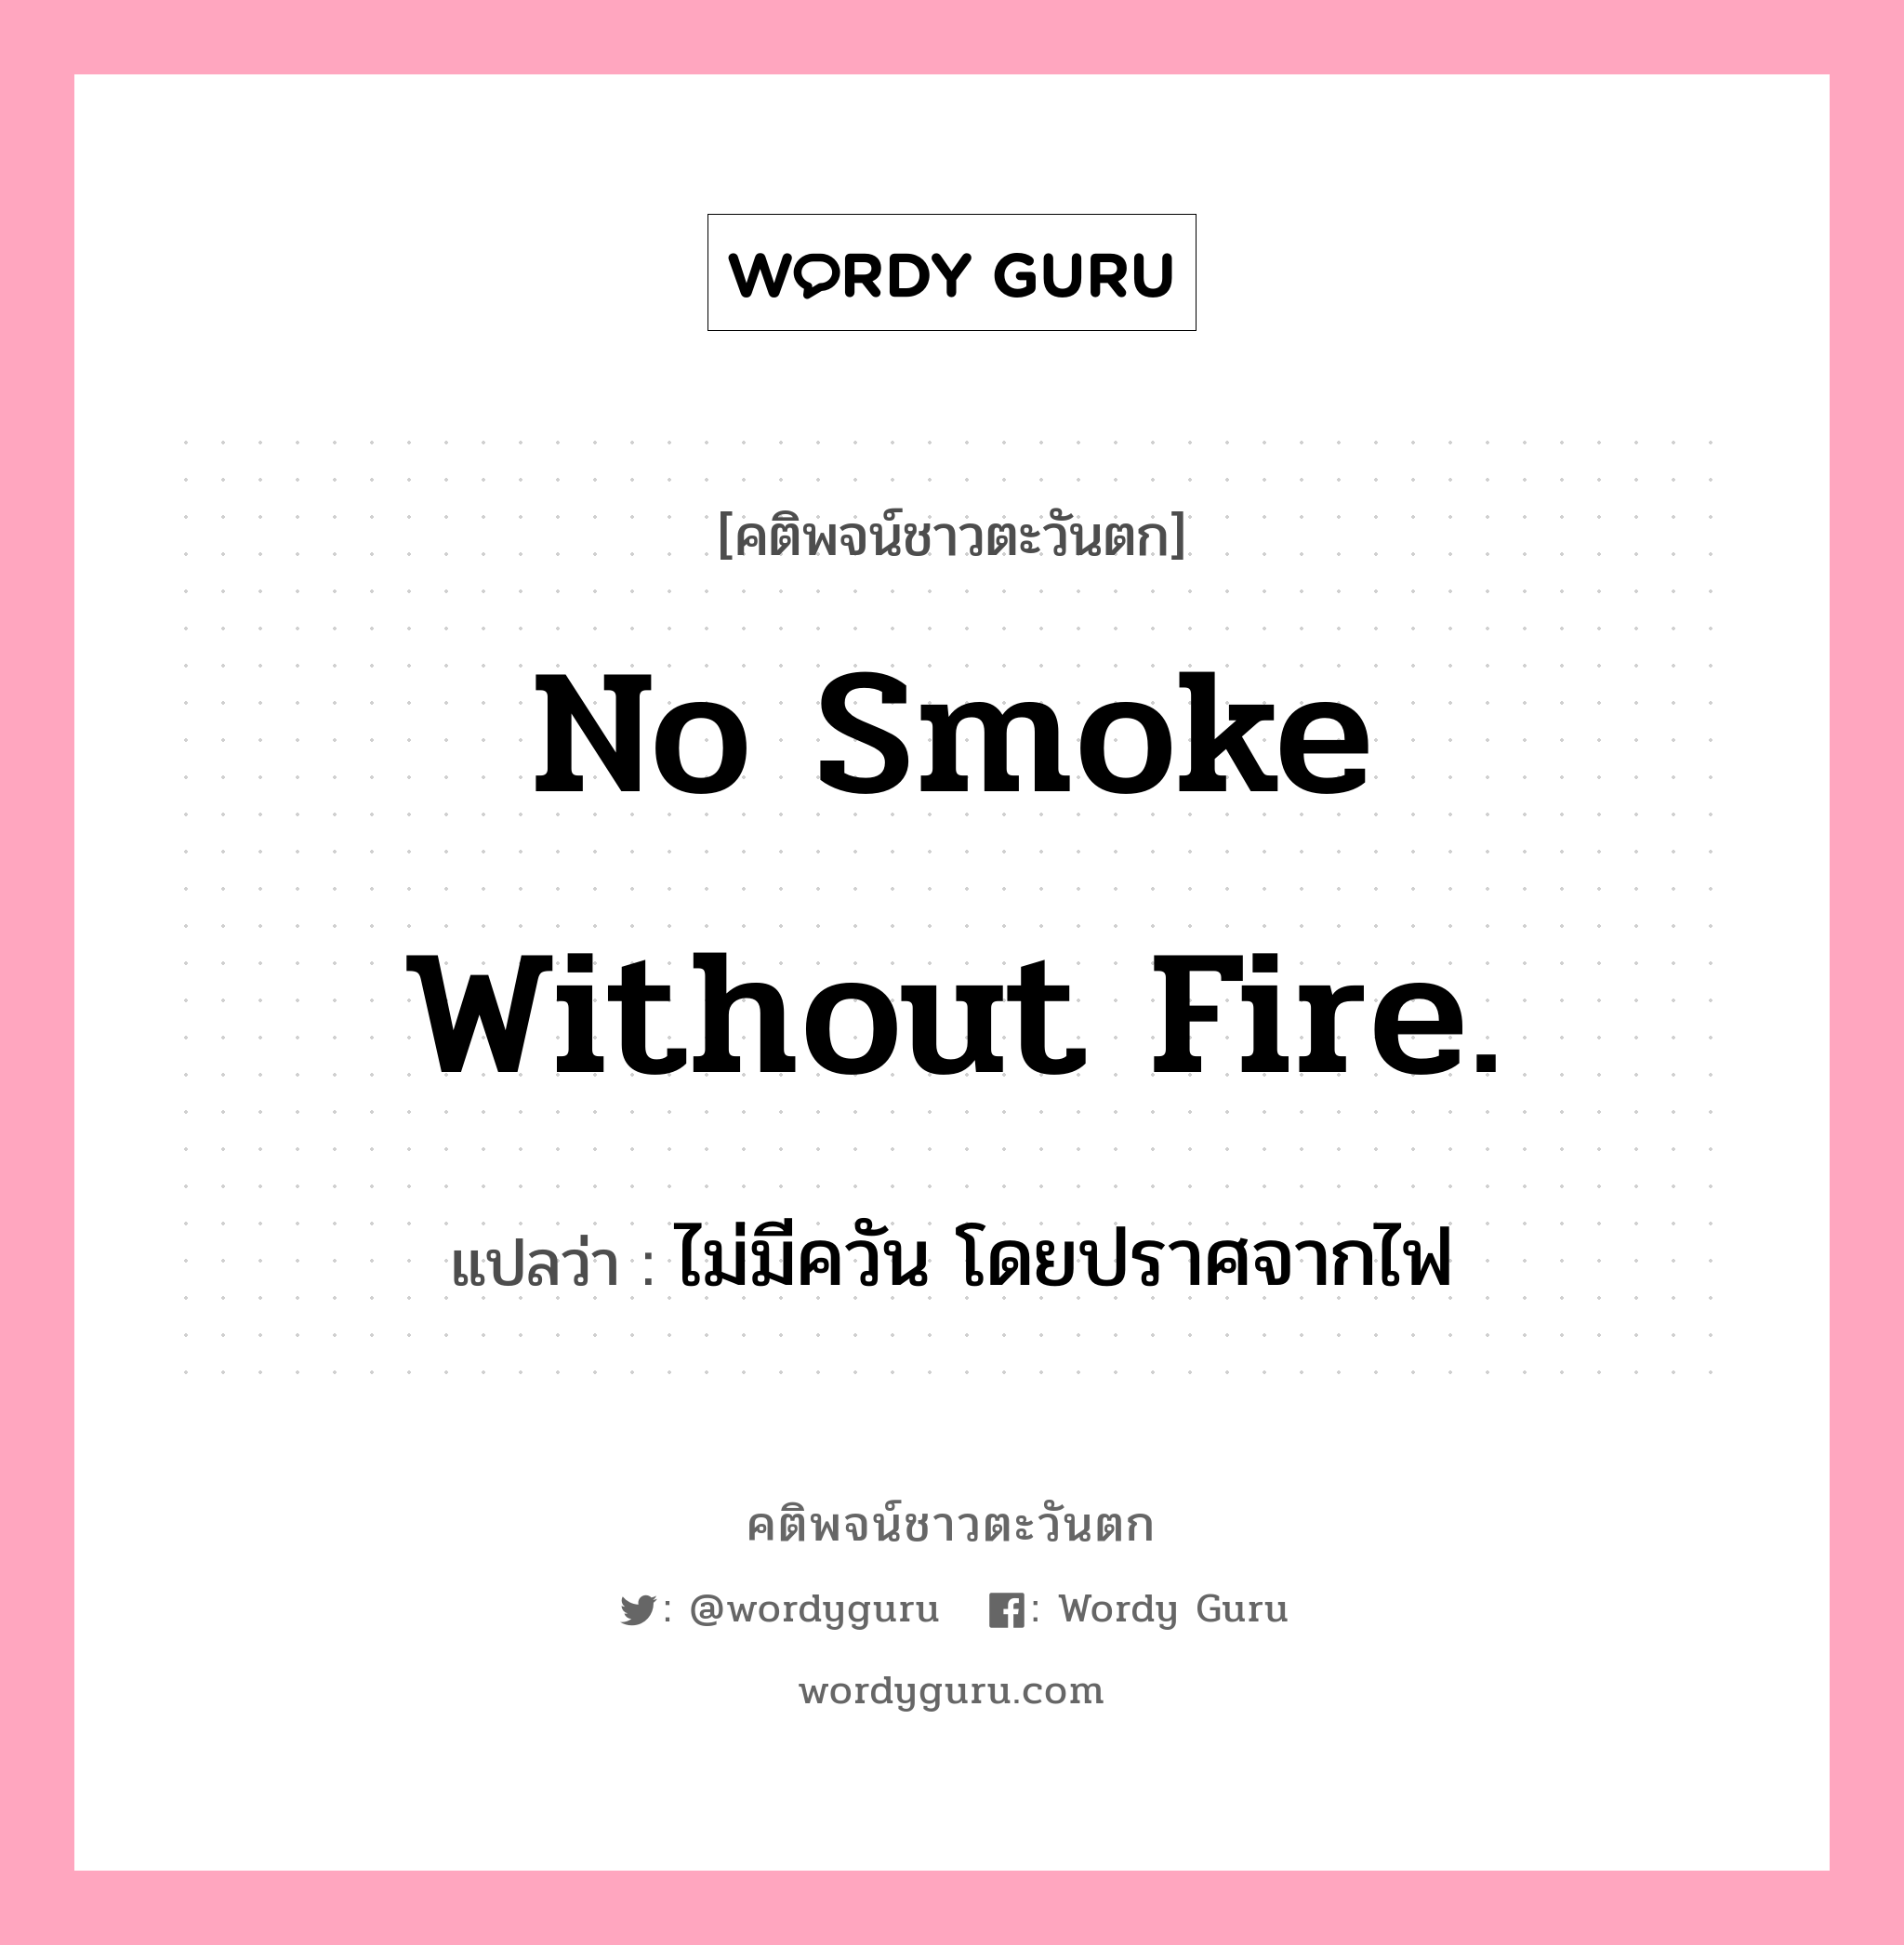 No smoke without fire., คติพจน์ชาวตะวันตก No smoke without fire. แปลว่า ไม่มีควัน โดยปราศจากไฟ